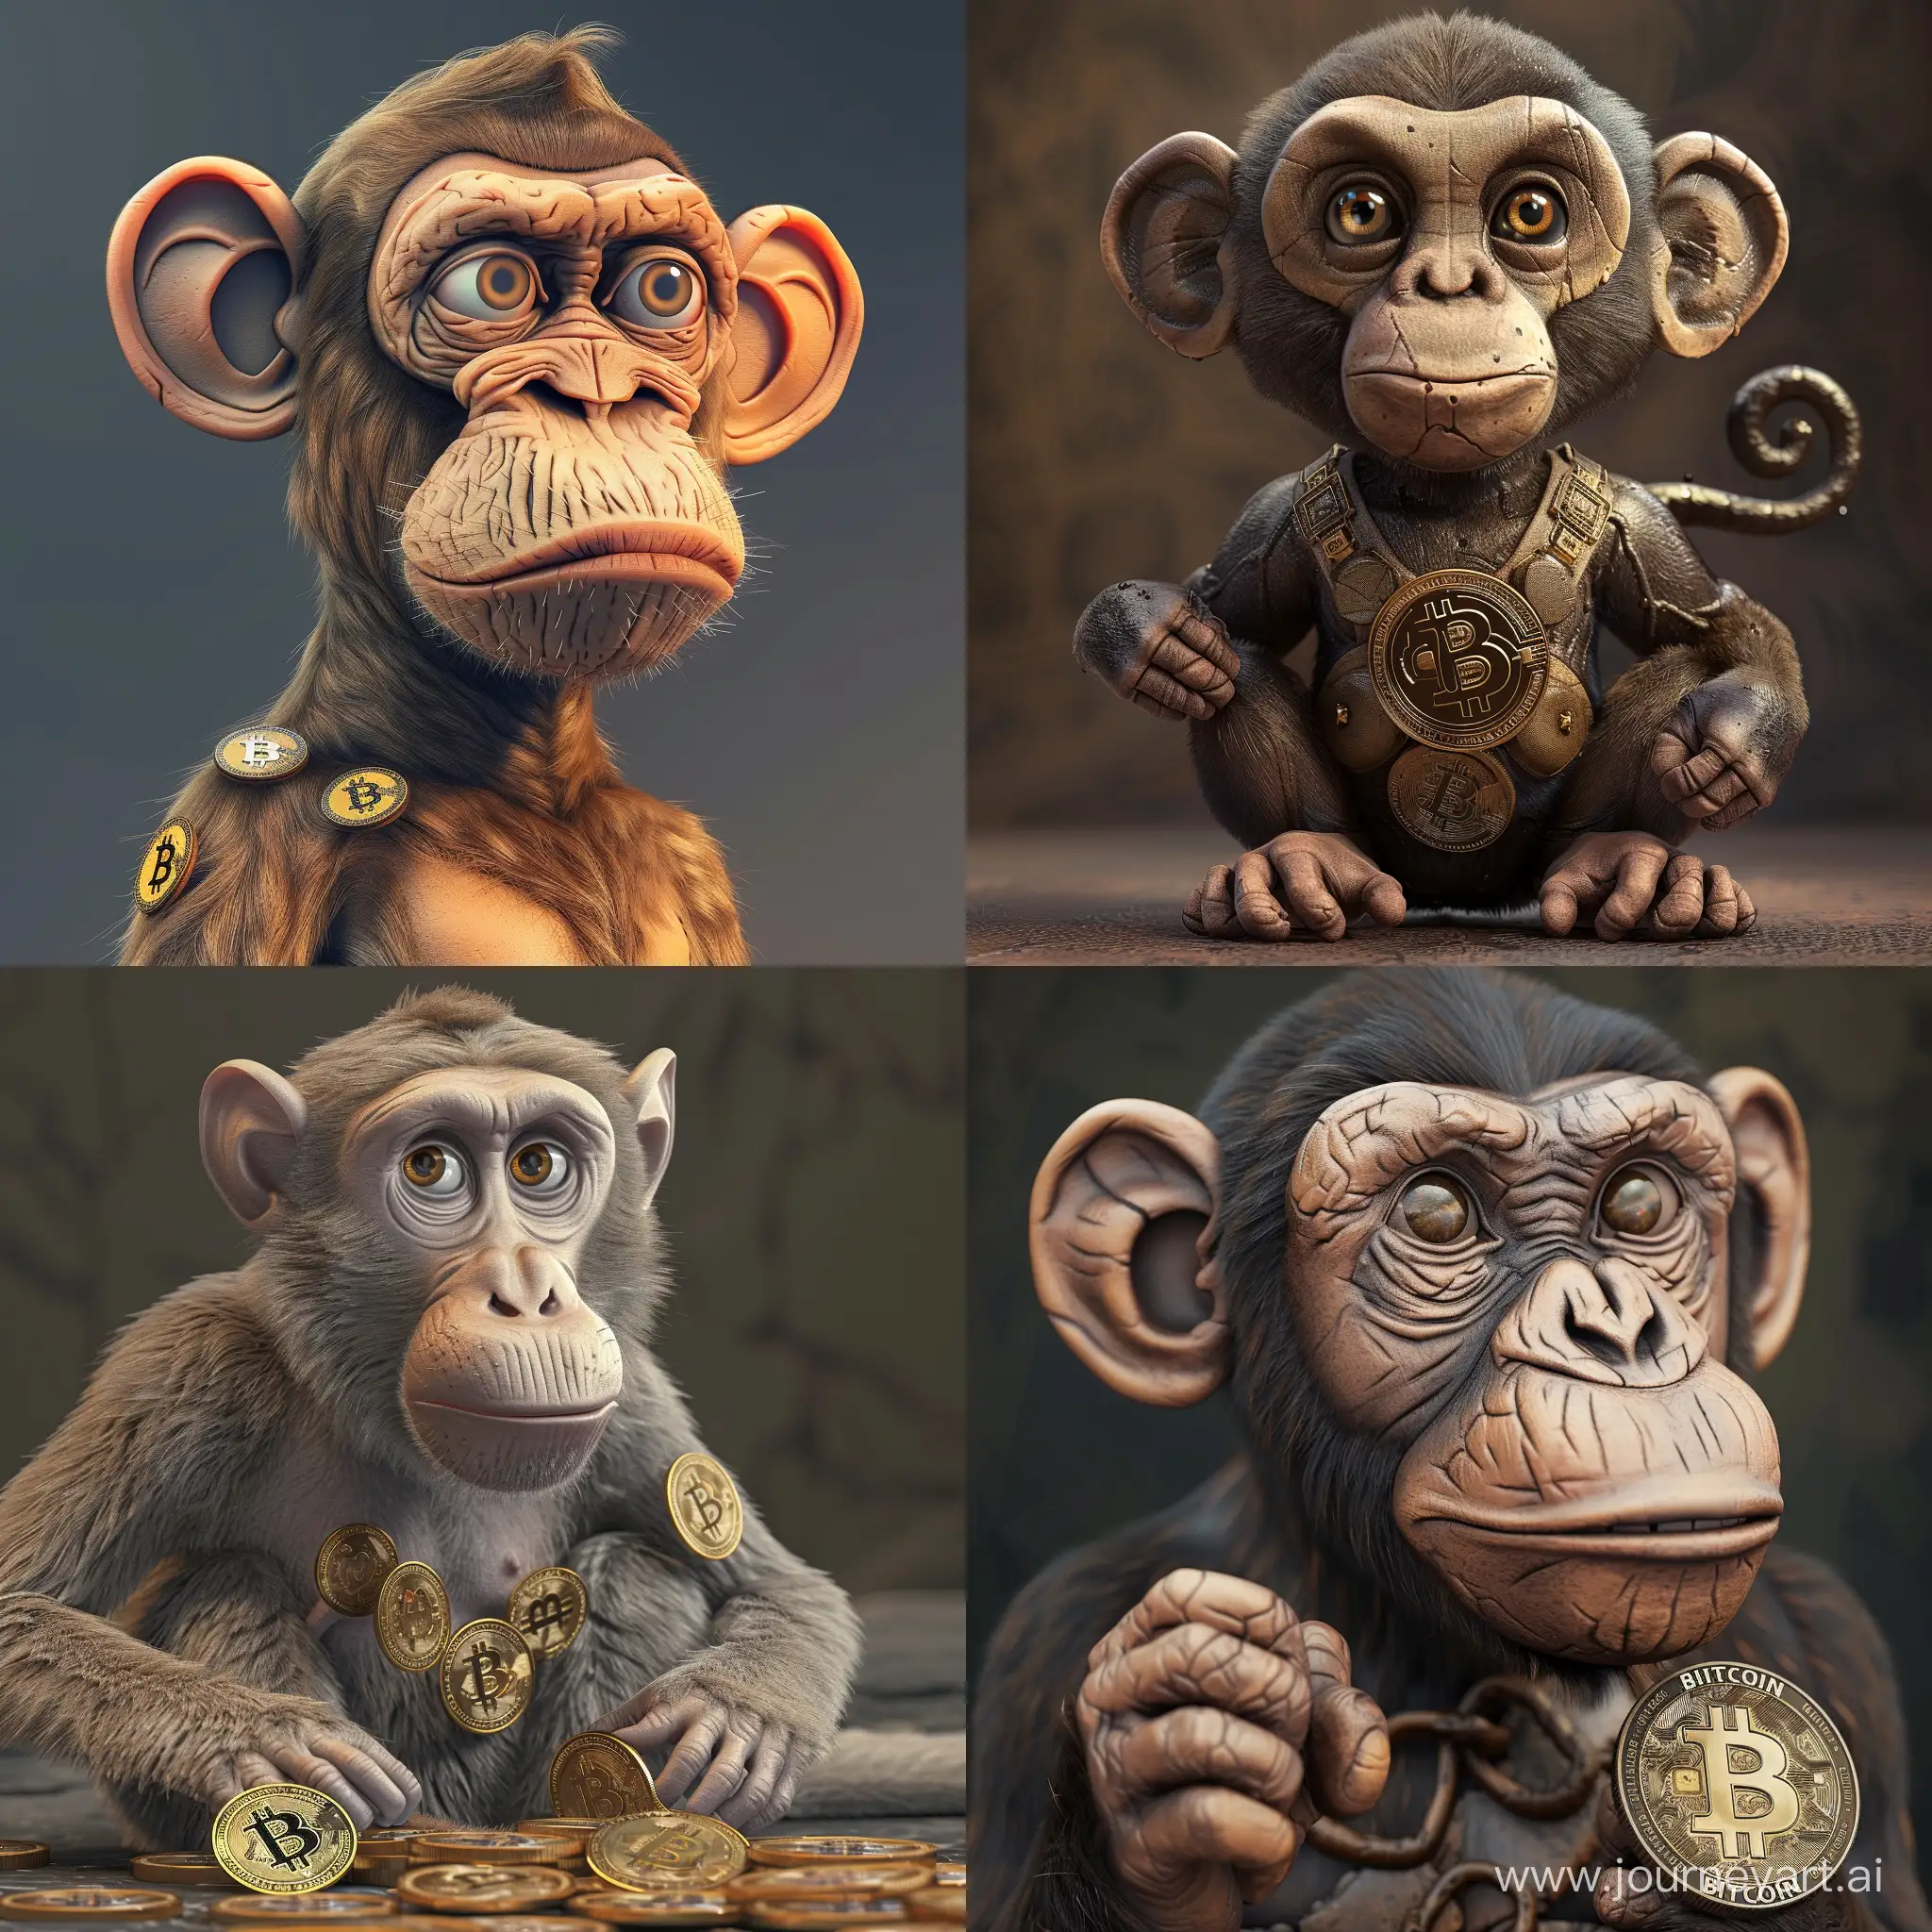 обезьяна, 3д, крутая обезьяна с биткоинам, рисовка.